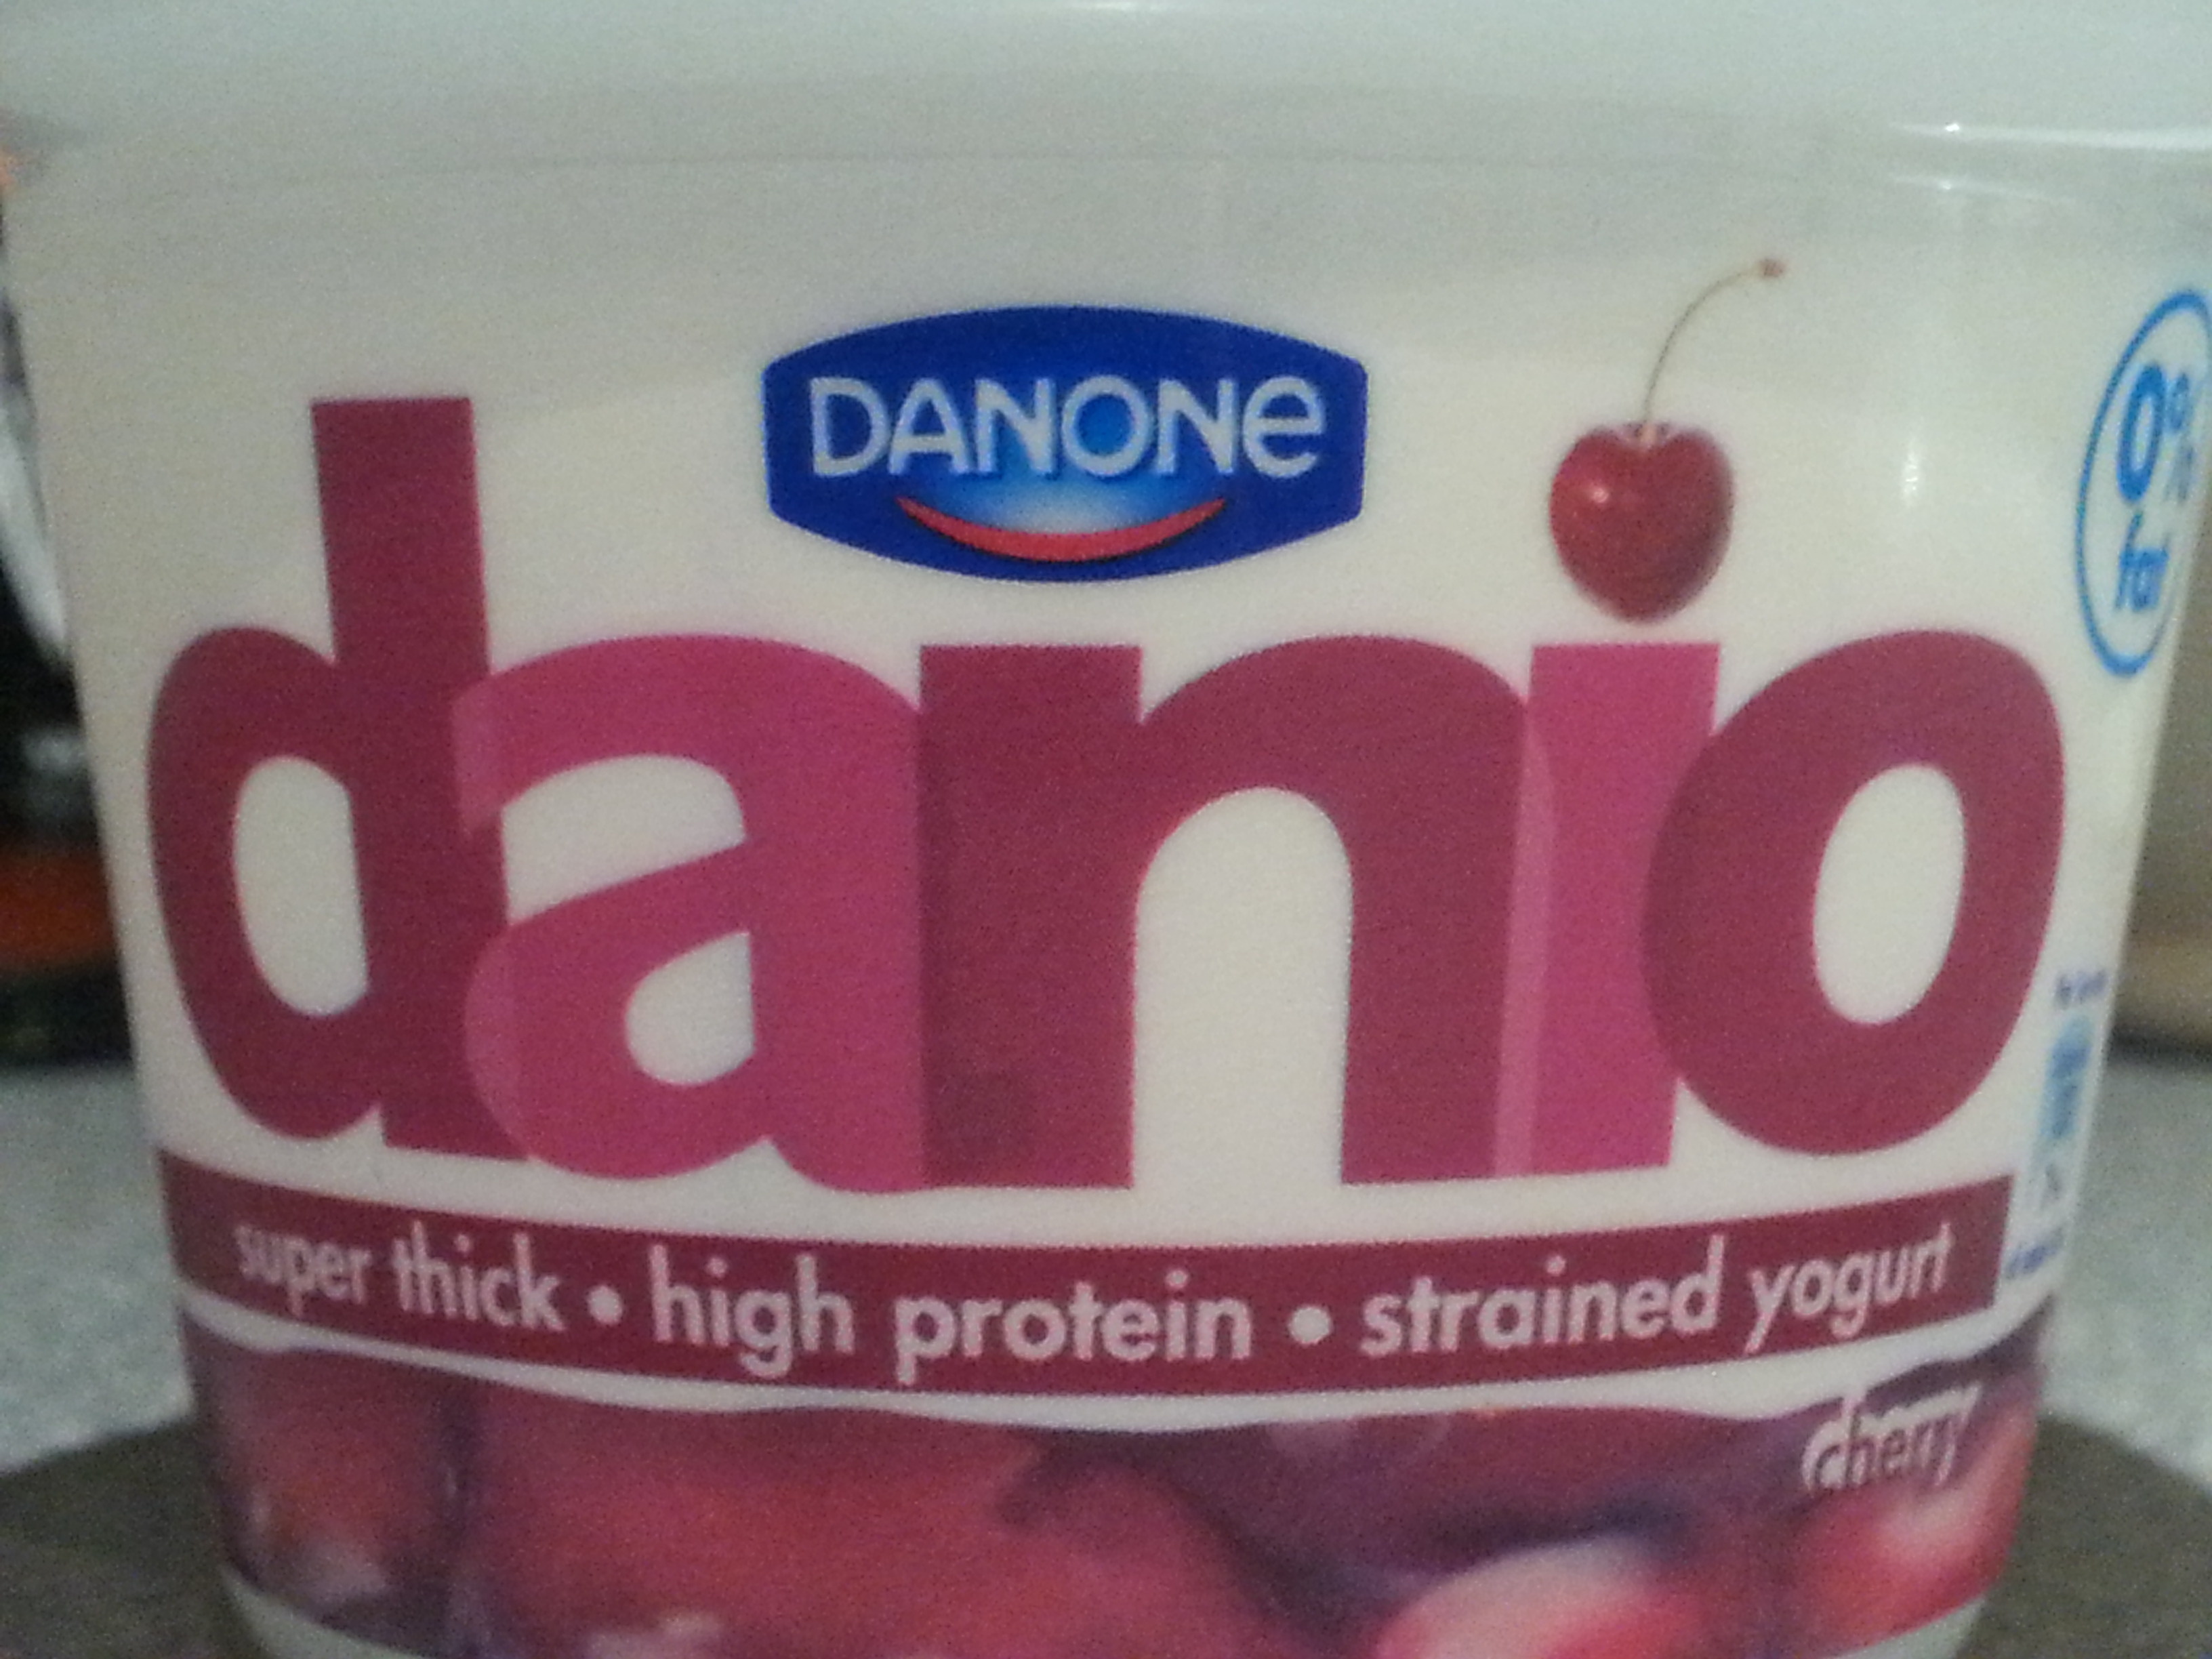 Danio Cherry - Product